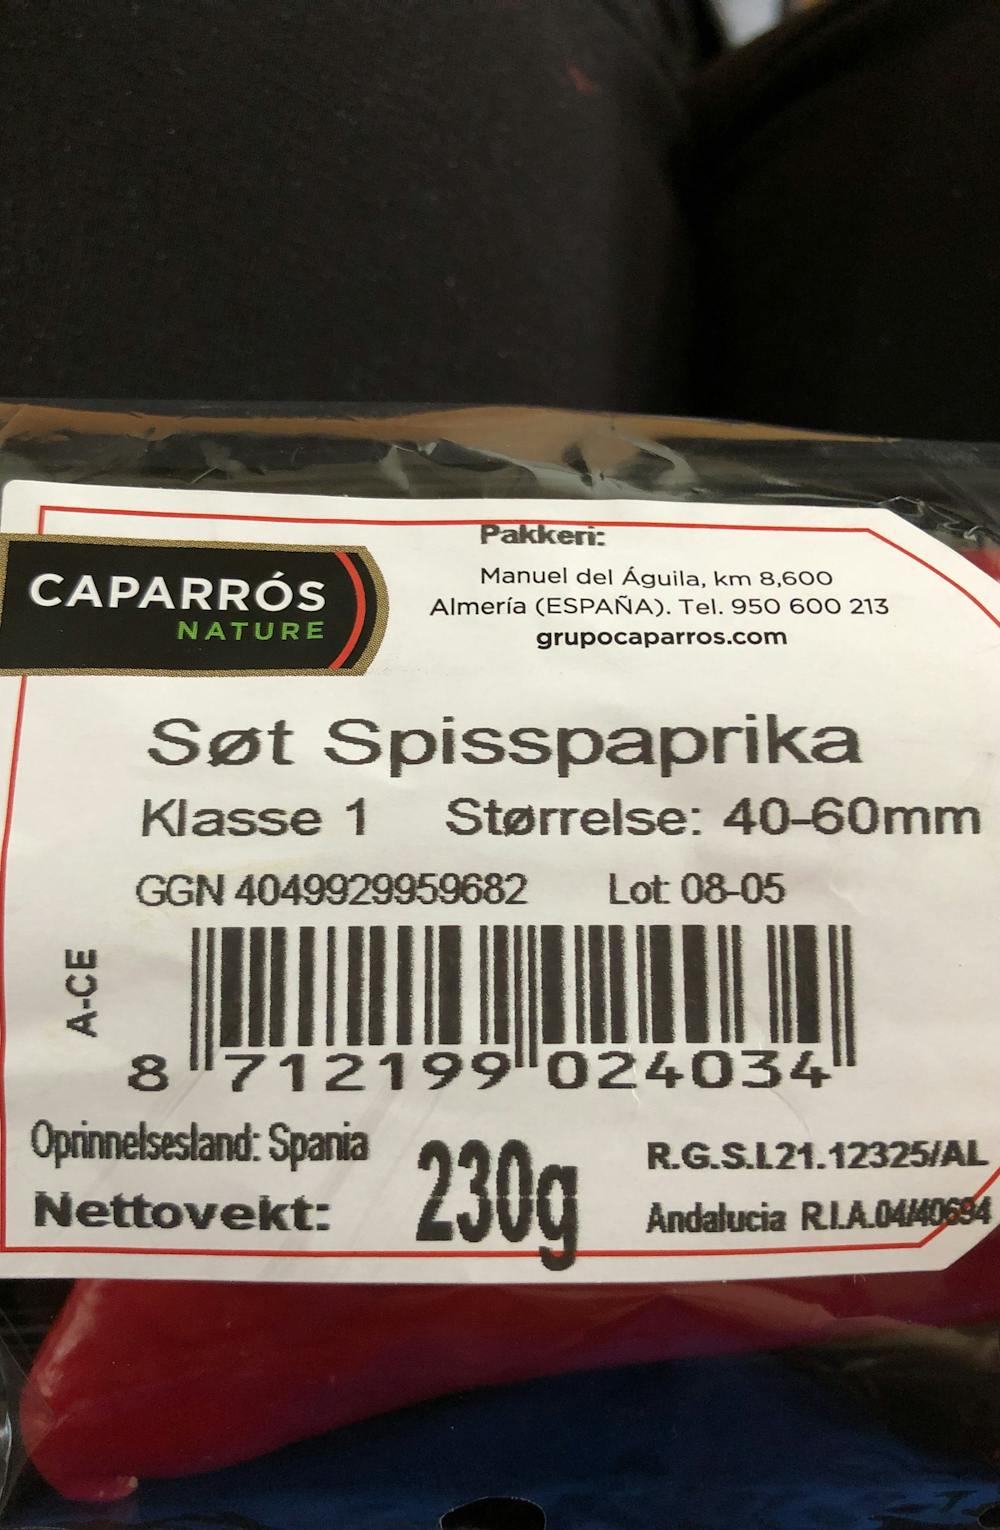 Ingrediensliste - Søt spisspaprika, Caparròs